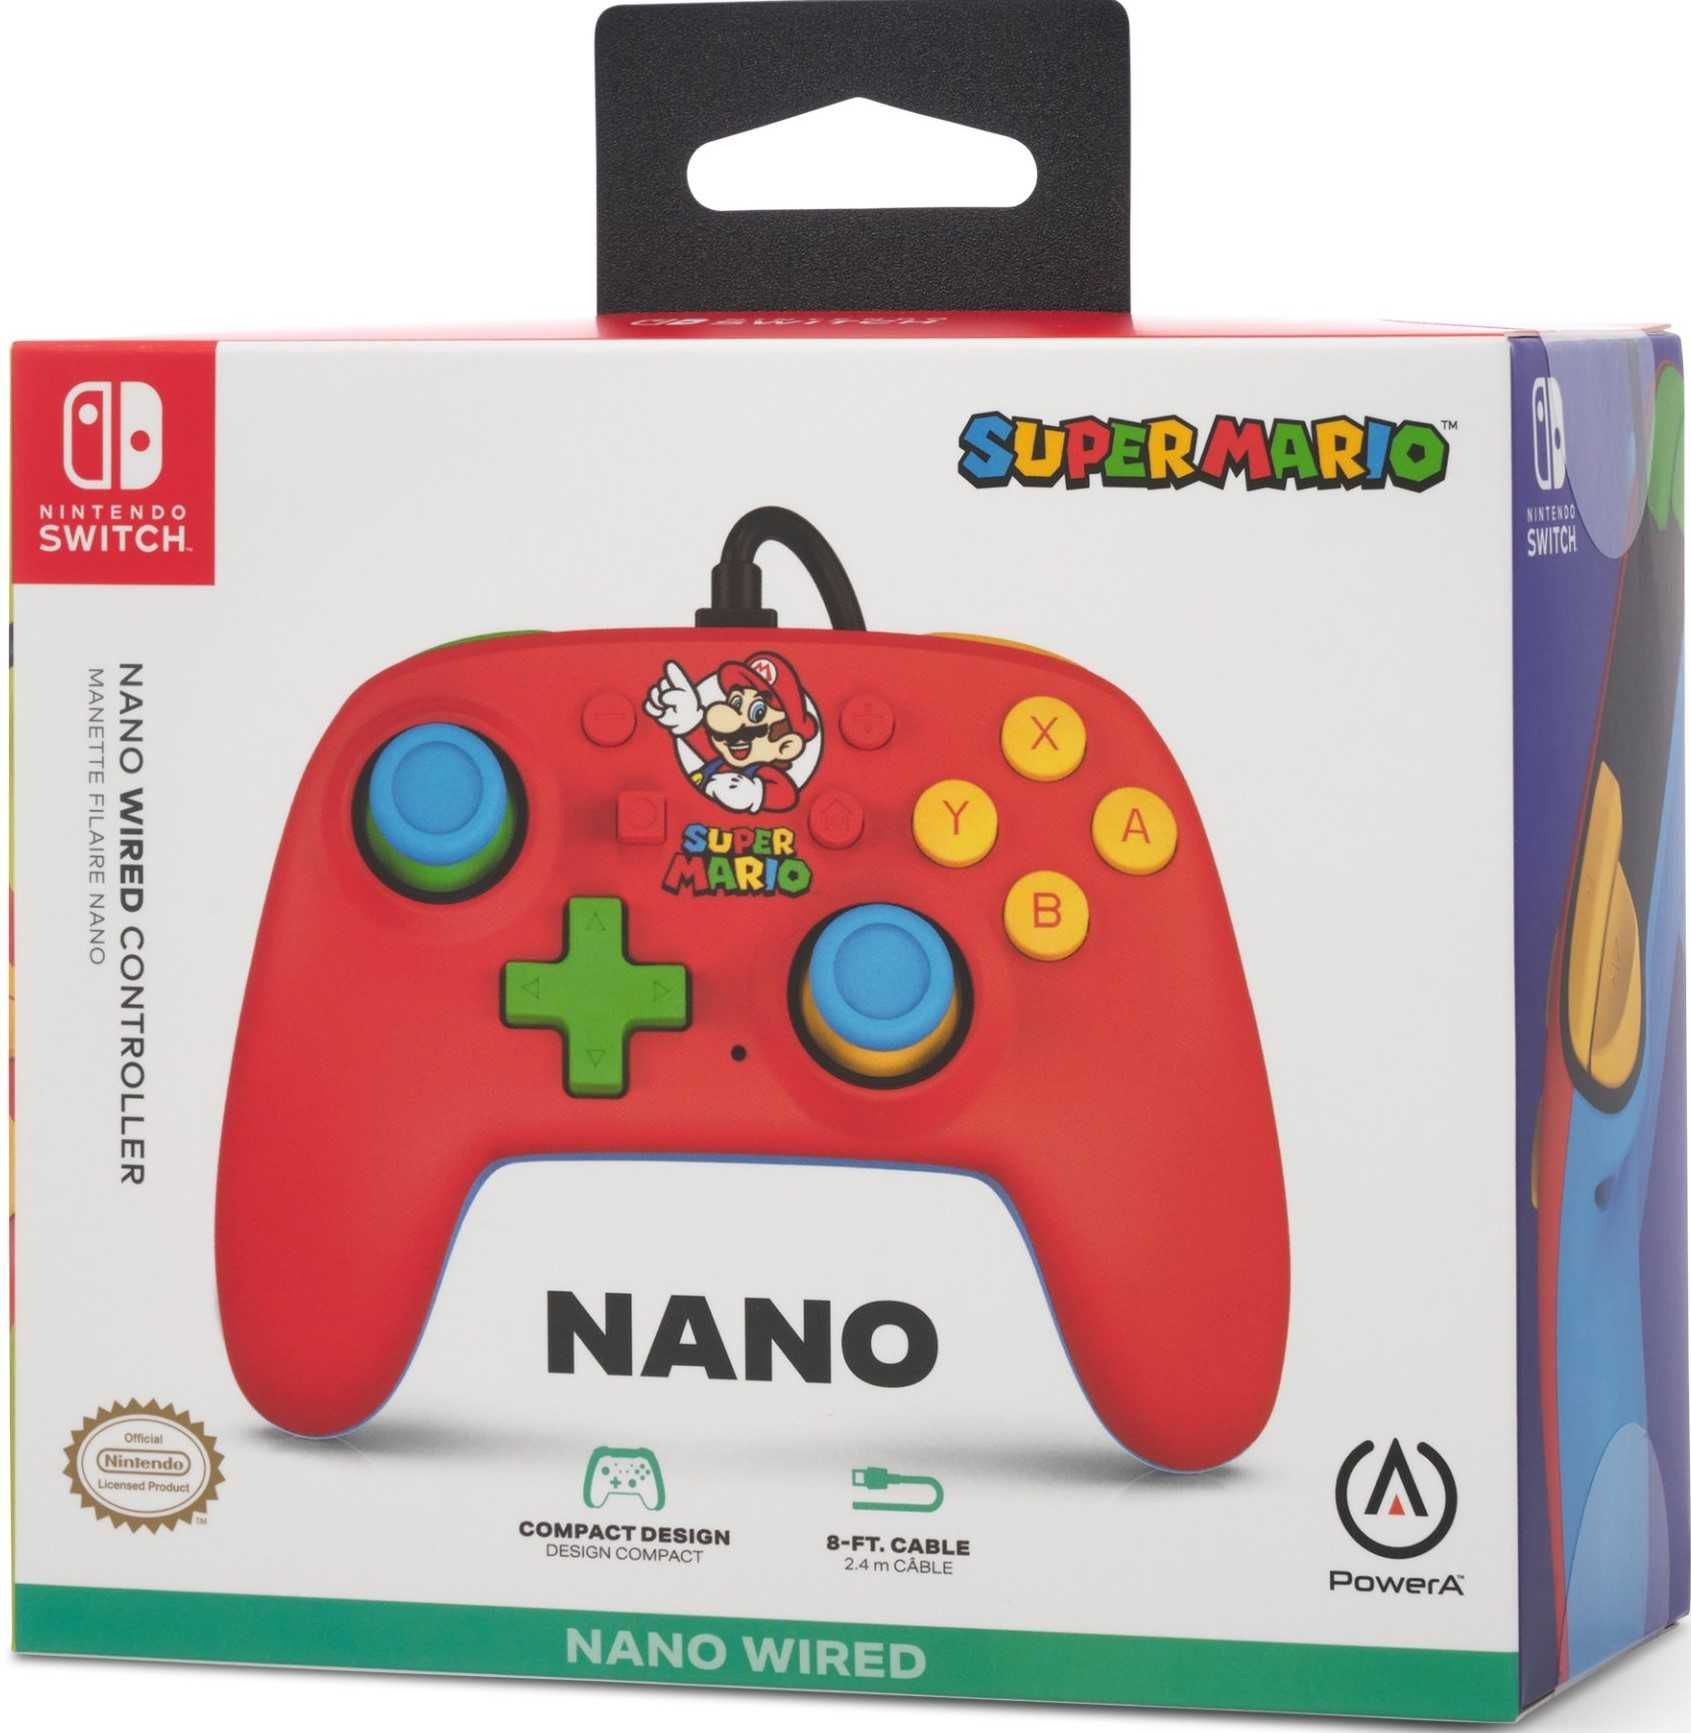 PowerA Pad przewodowy NANO Mario Medley do Nintendo SWITCH